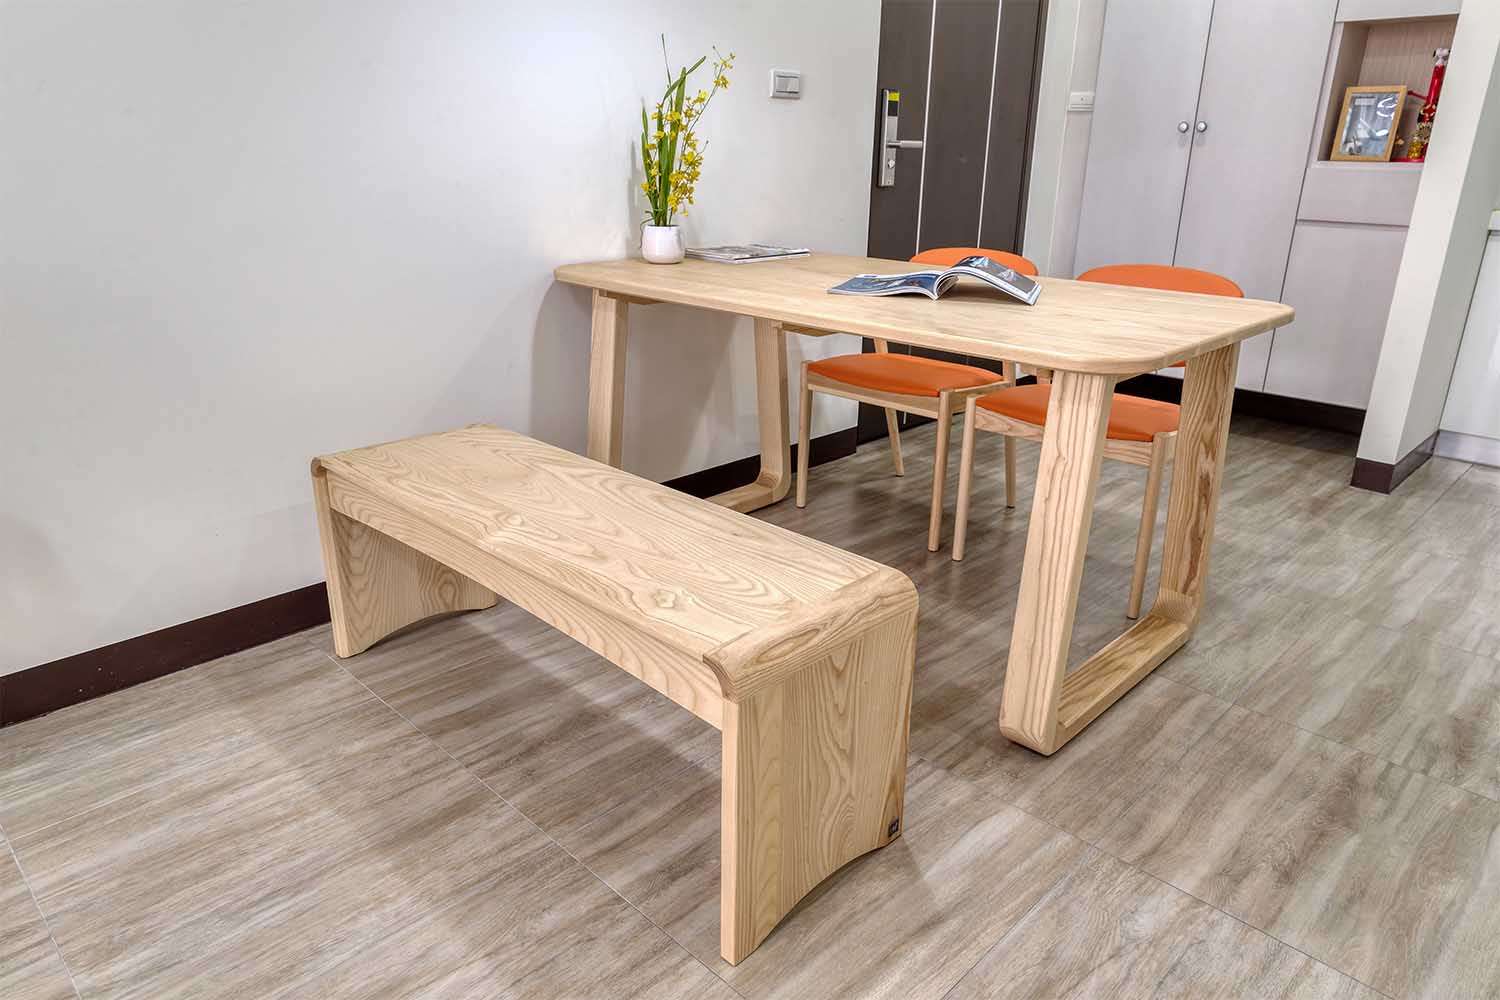 北歐風格客廳實木餐桌實木餐椅實木長凳北歐風格家具